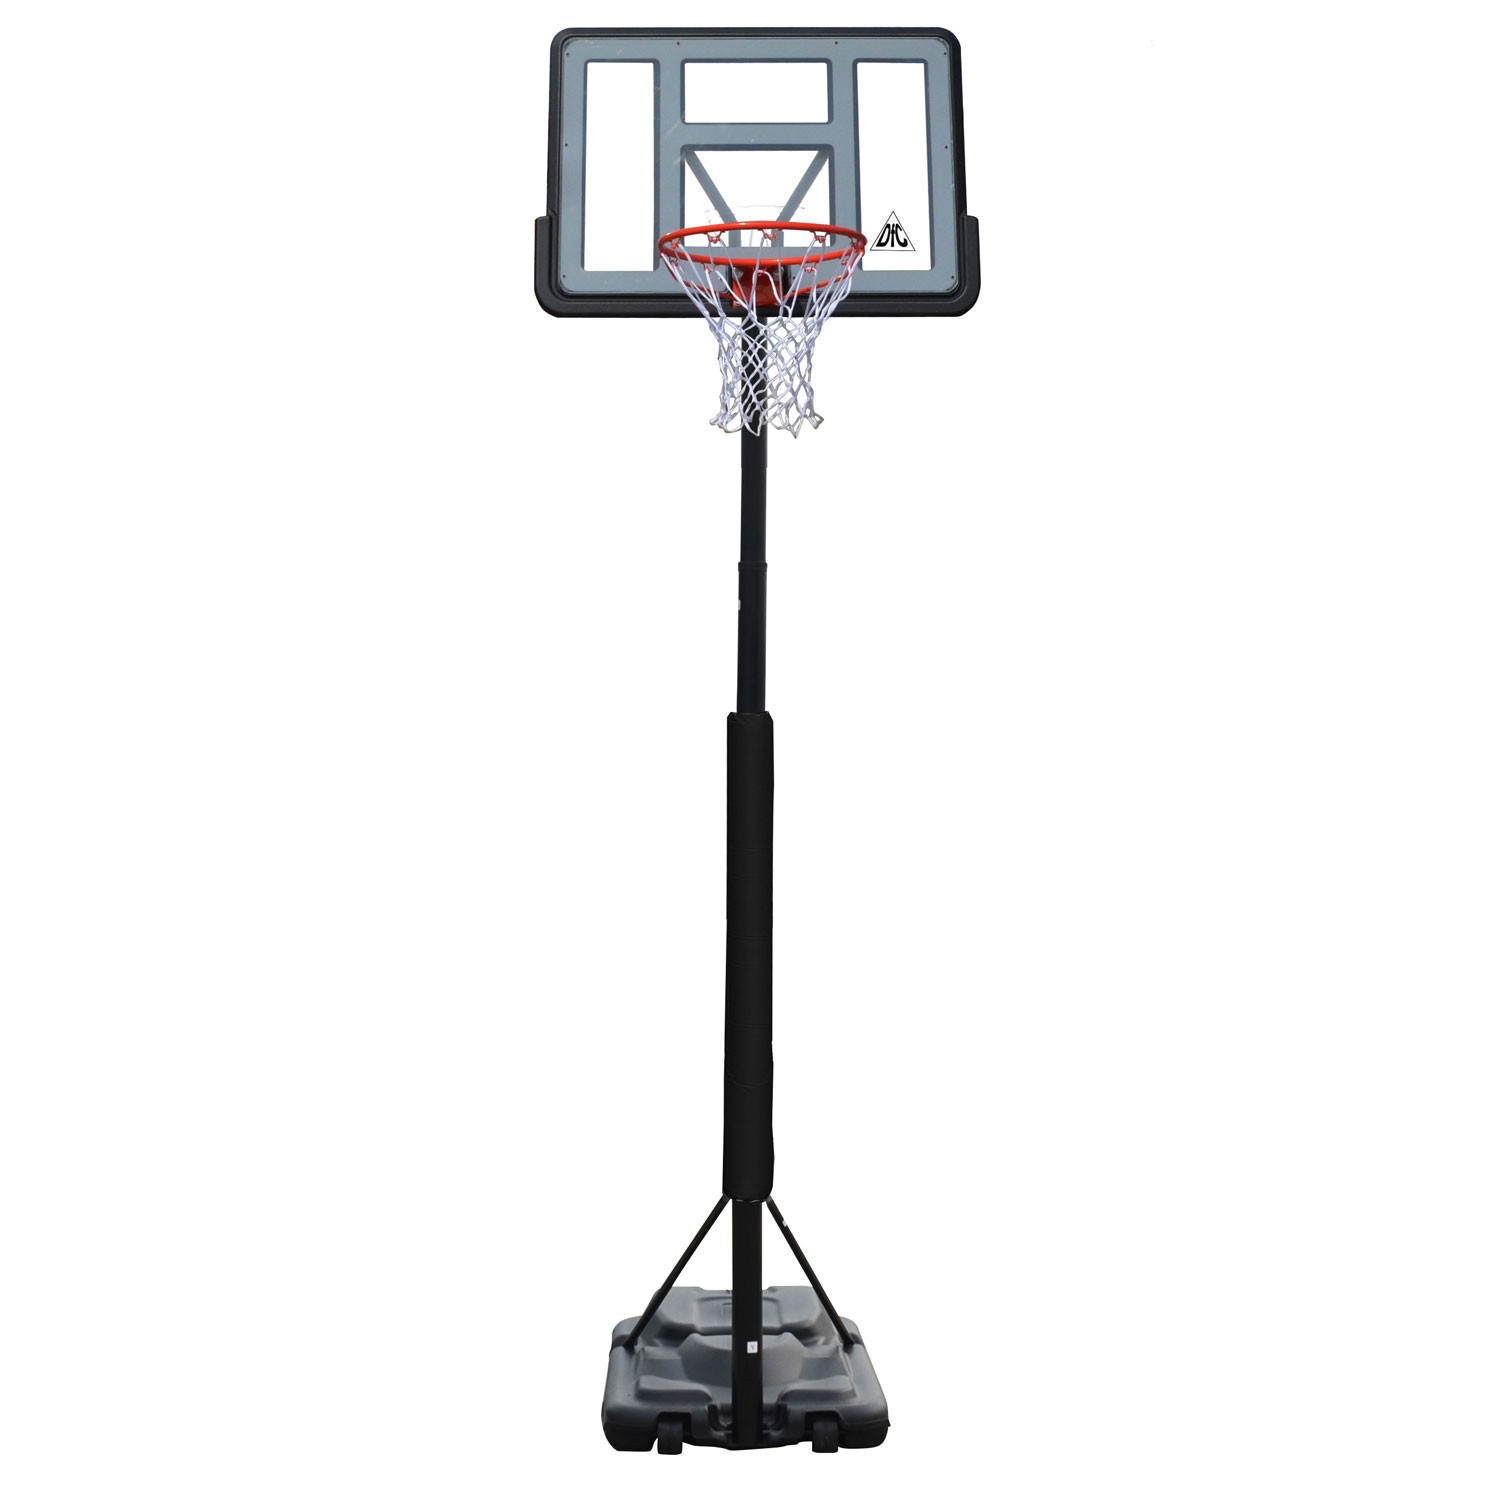 Мобильная баскетбольная стойка DFC 44" STAND44PVC3 - купить в Москве, цены на Мегамаркет | 100042587537